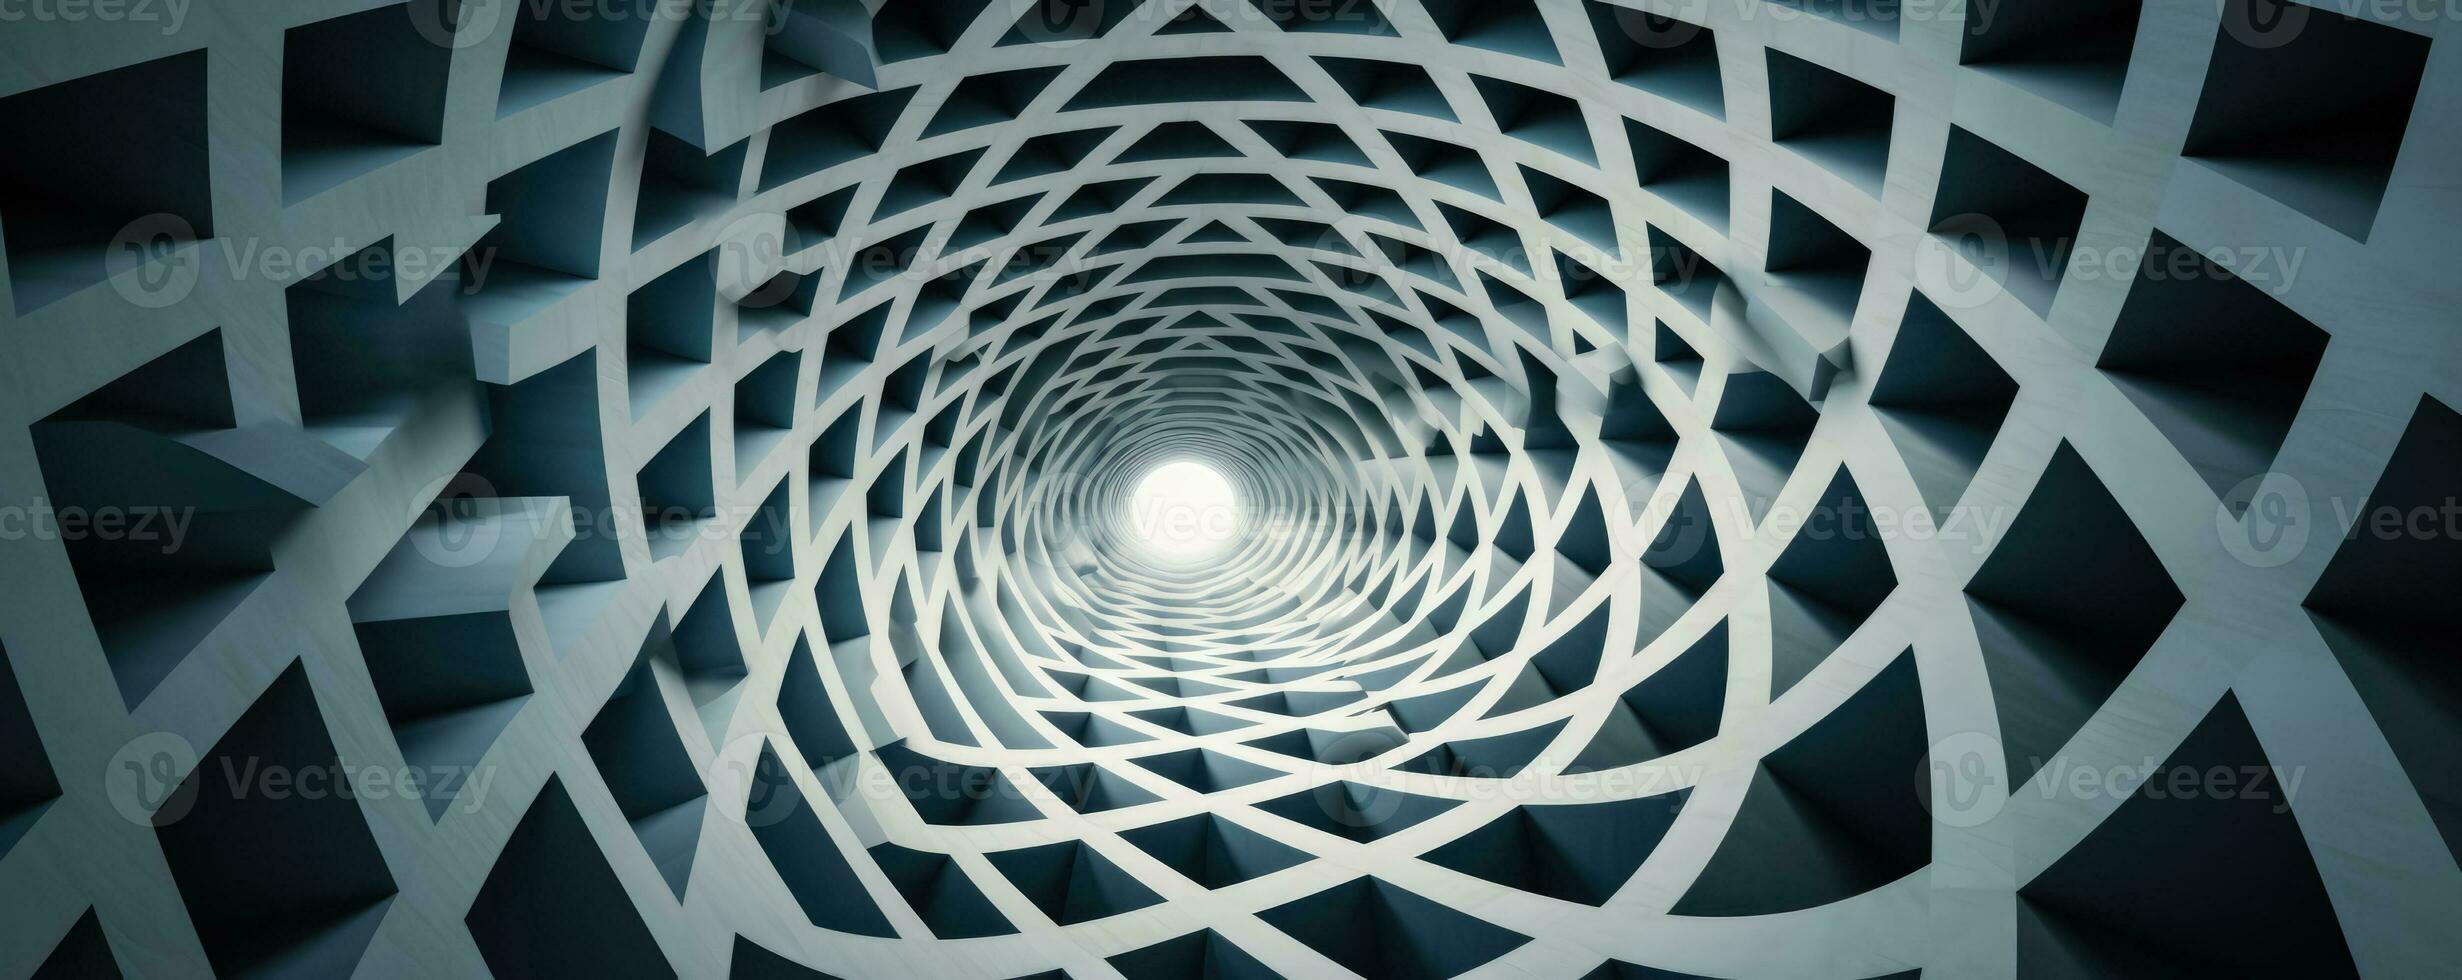 gedraaid rooster patronen creëren een visueel uitdagend optisch illusie landschap foto